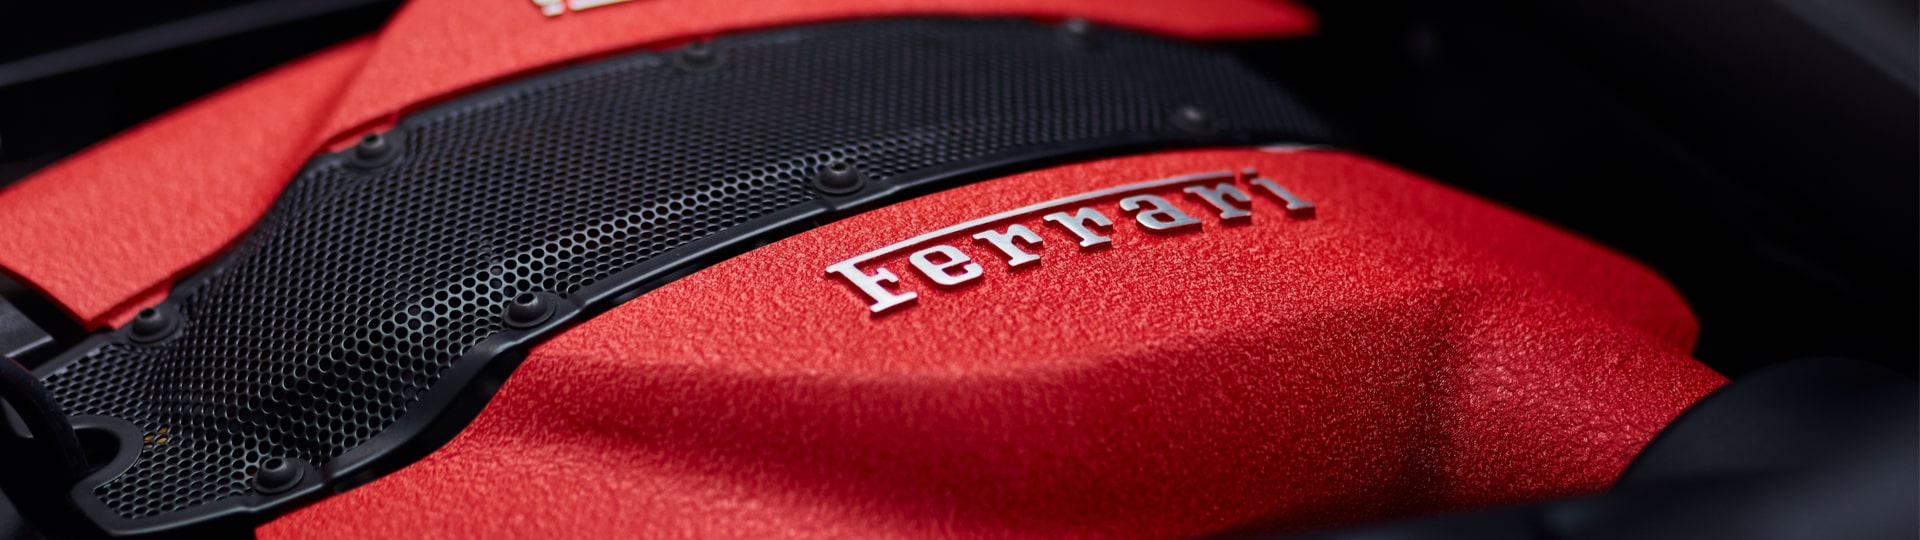 Automobilka Ferrari zvýšila čtvrtletní zisk